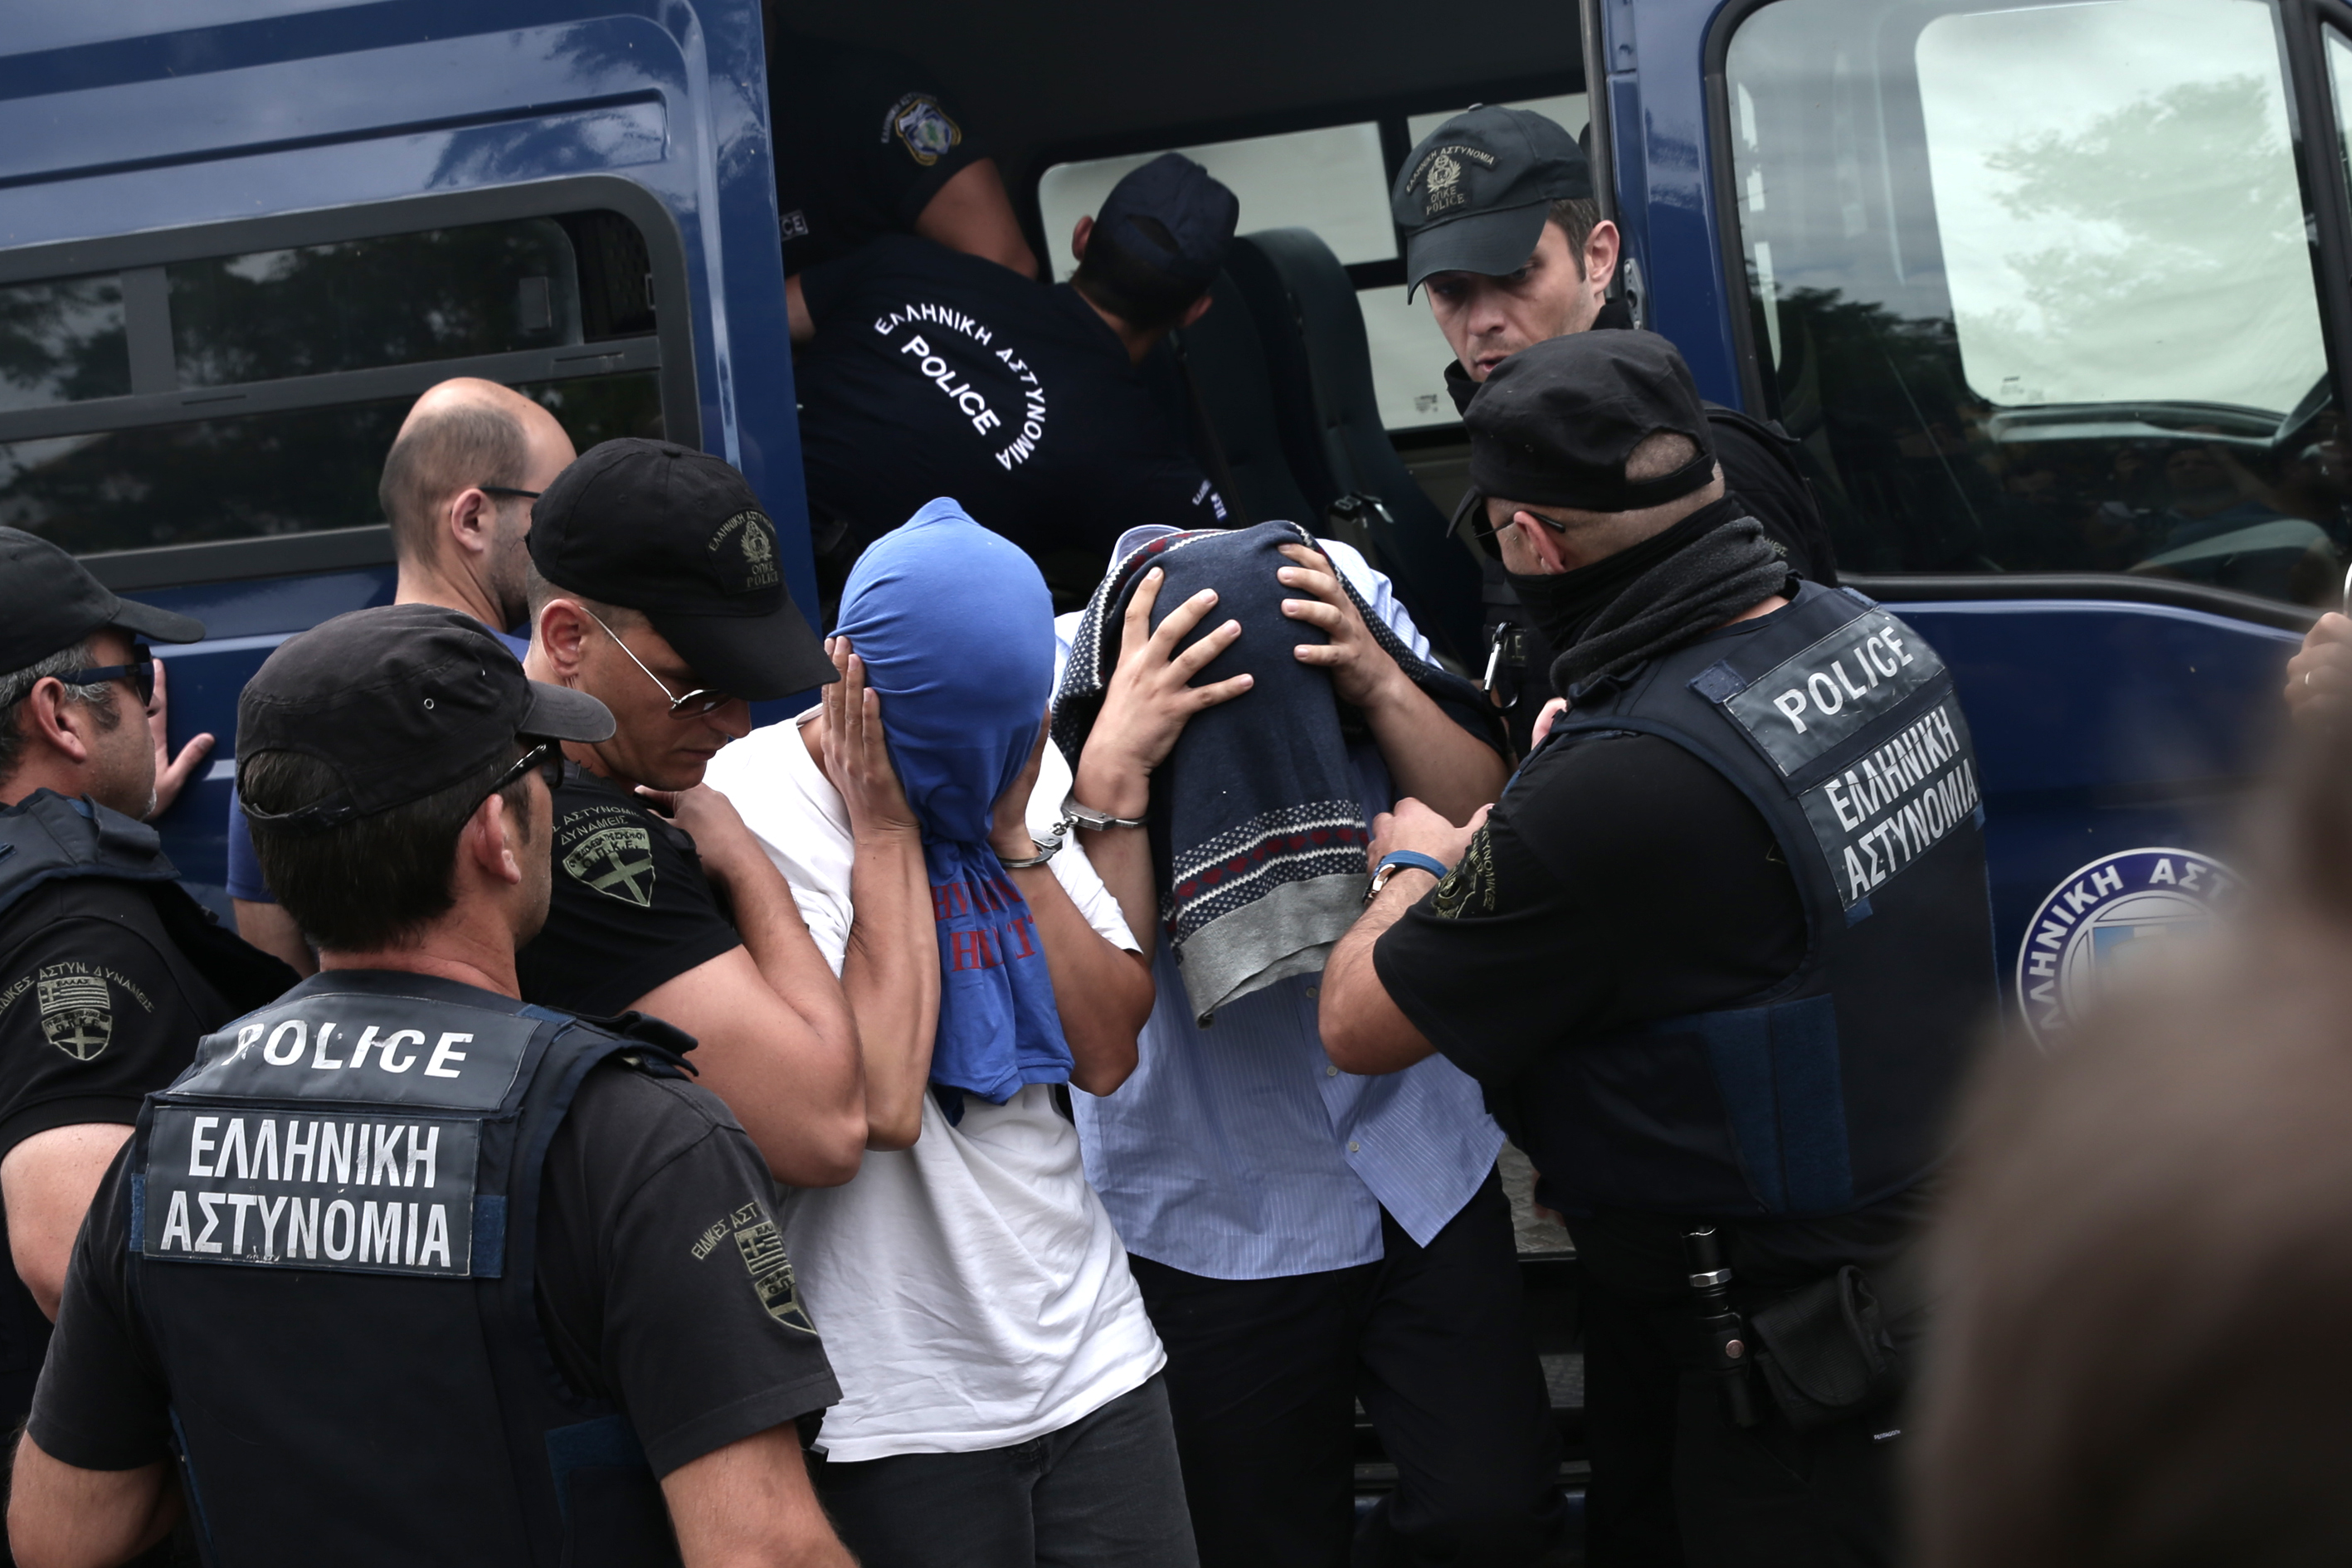 بعد إعلان المحكمة قرارها بتأجيل القضية، رُحِّل الانقلابيون إلى سجن فيريجيك شديد الحراسة حيث يُحتَجَزون.